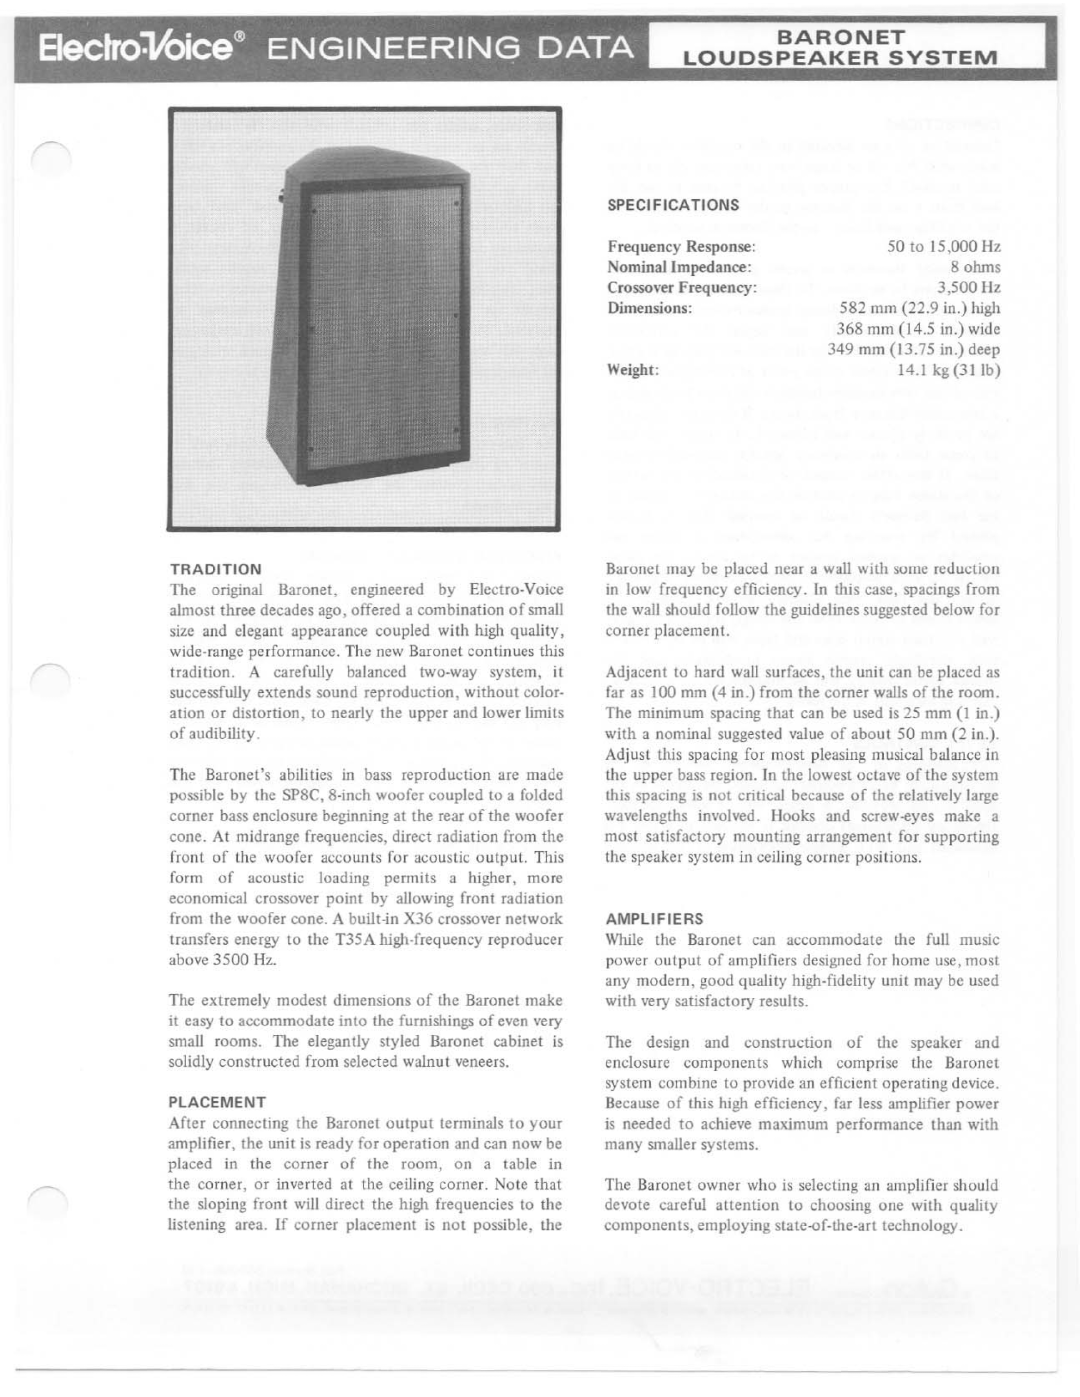 Electro-Voice Baronet manual 